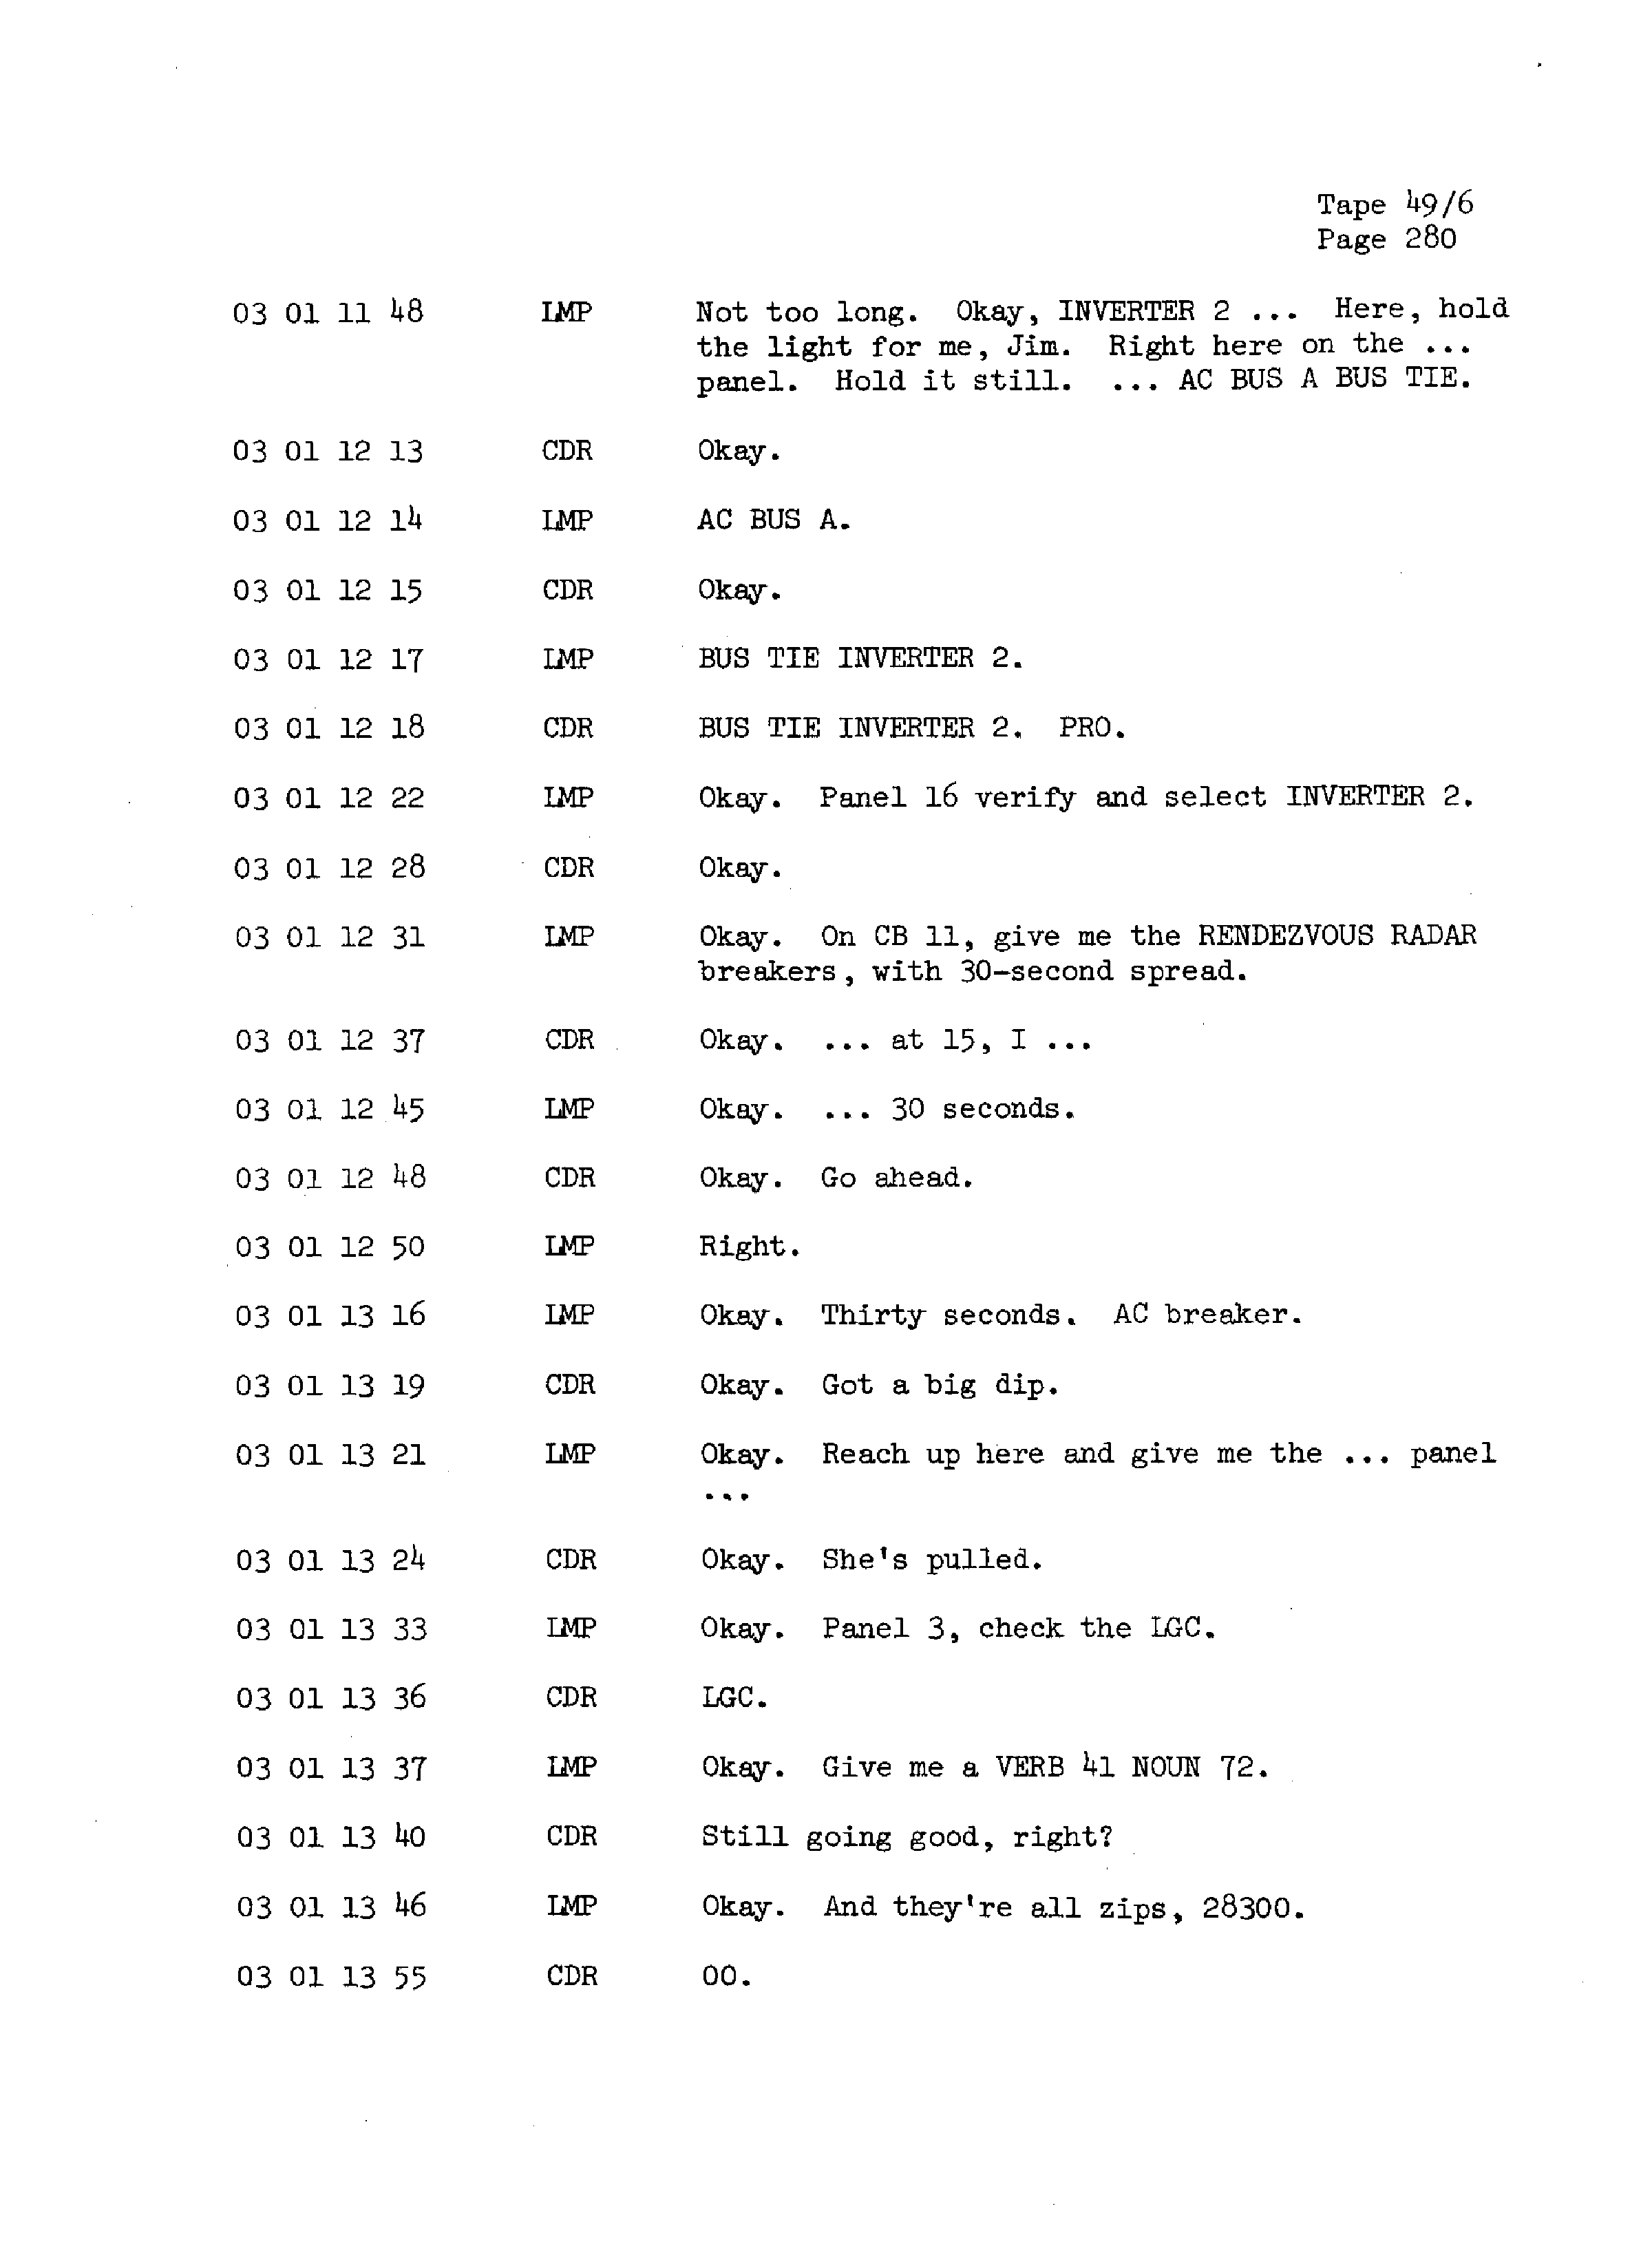 Page 287 of Apollo 13’s original transcript